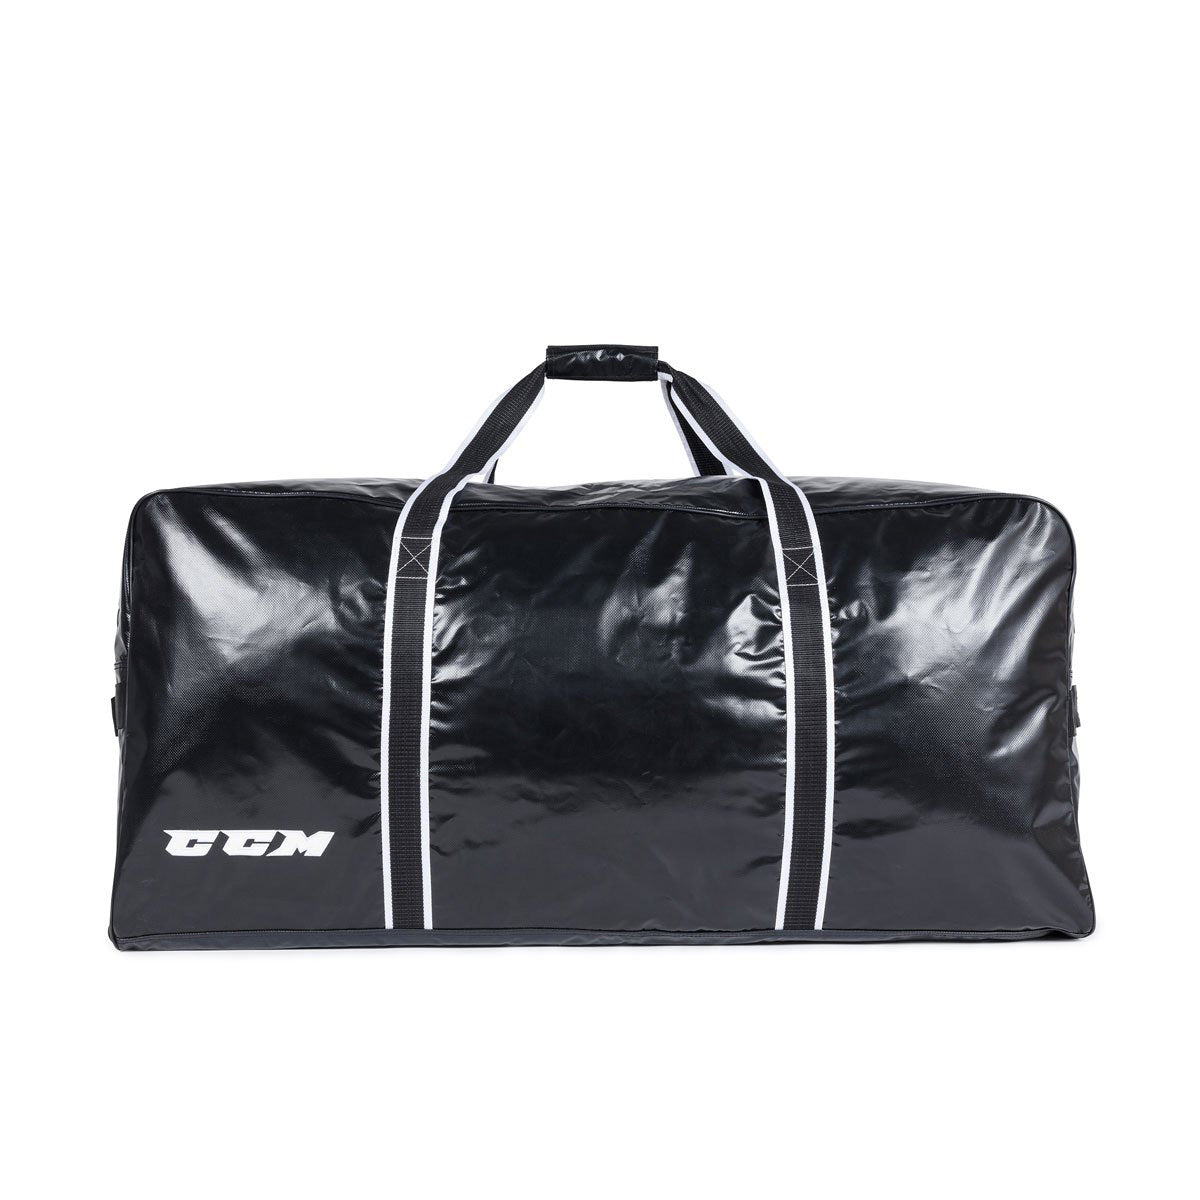 TK 5 Plus Goalie Bag With Wheels